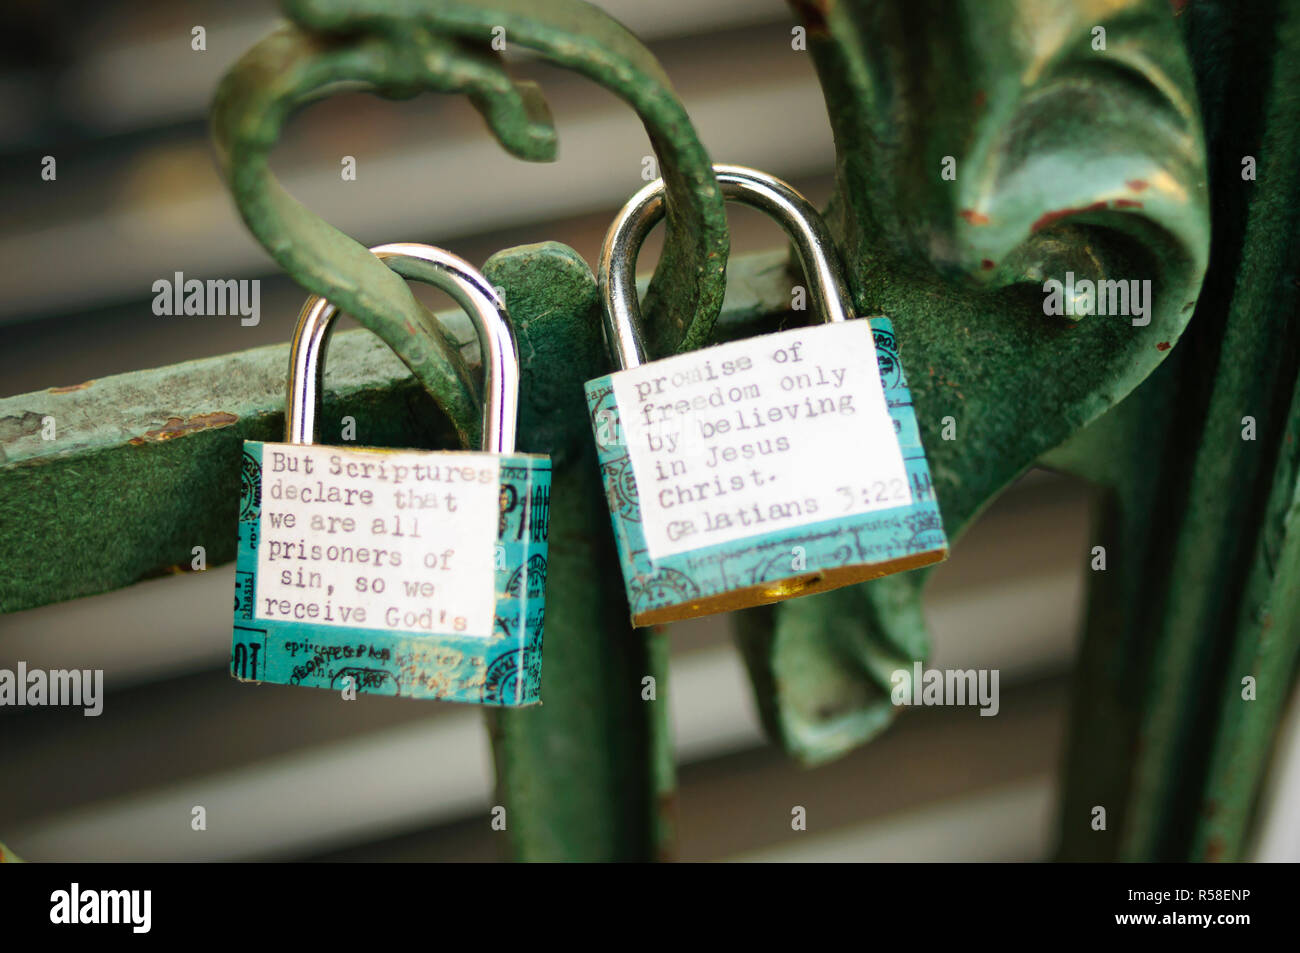 security locks in Paris Love mesage Stock Photo